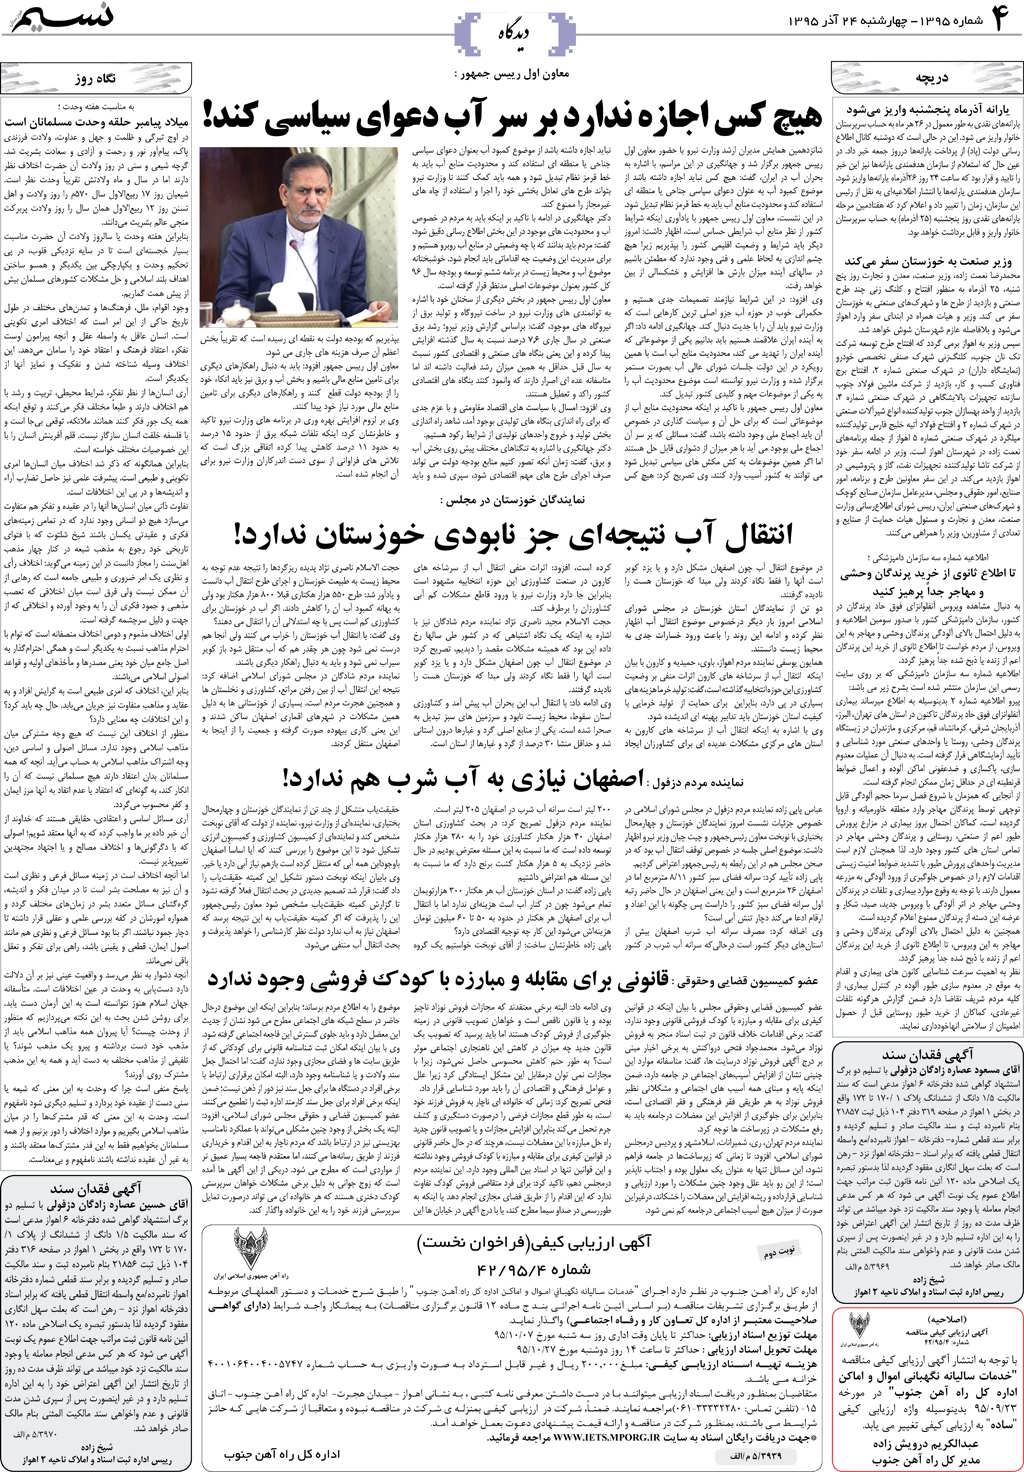 صفحه دیدگاه روزنامه نسیم شماره 1395